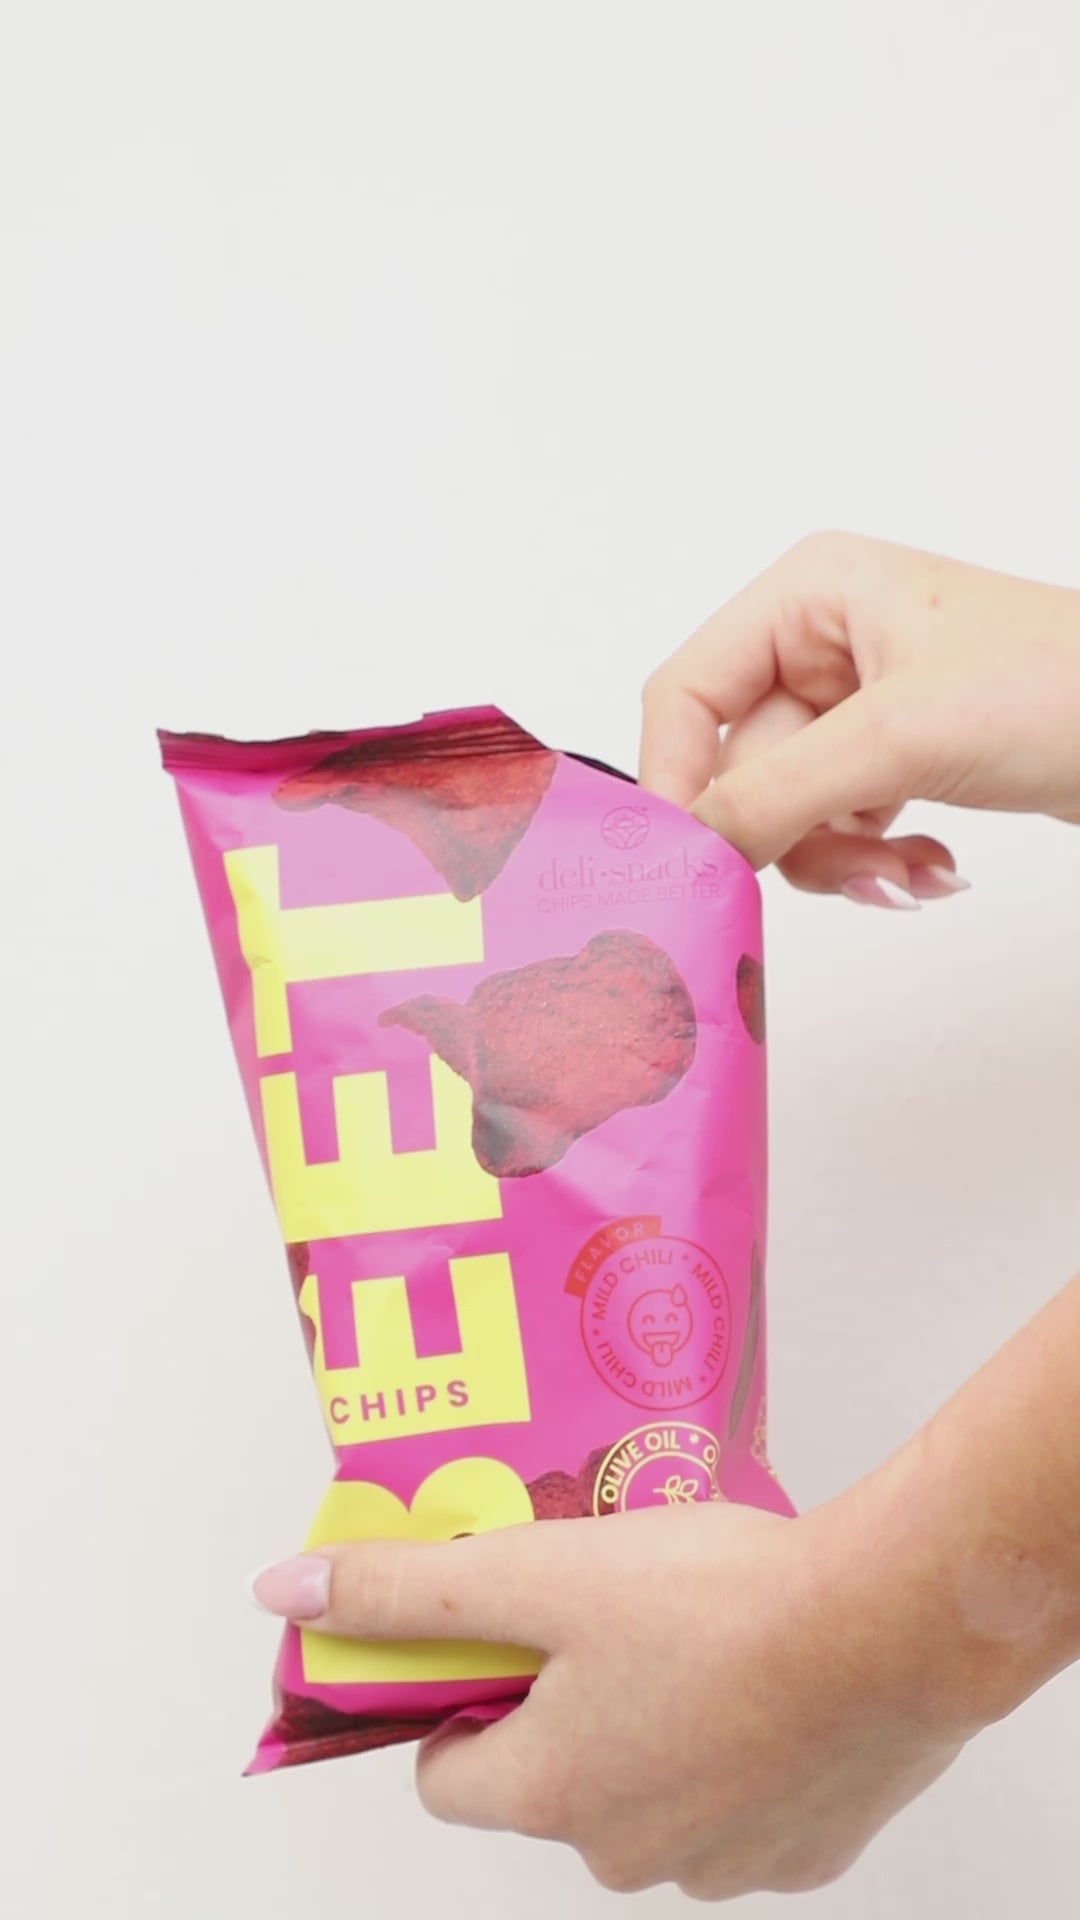 beet chips healthy snack crisps - vegan snack - natural snack - gluten free snack - grain free snack 